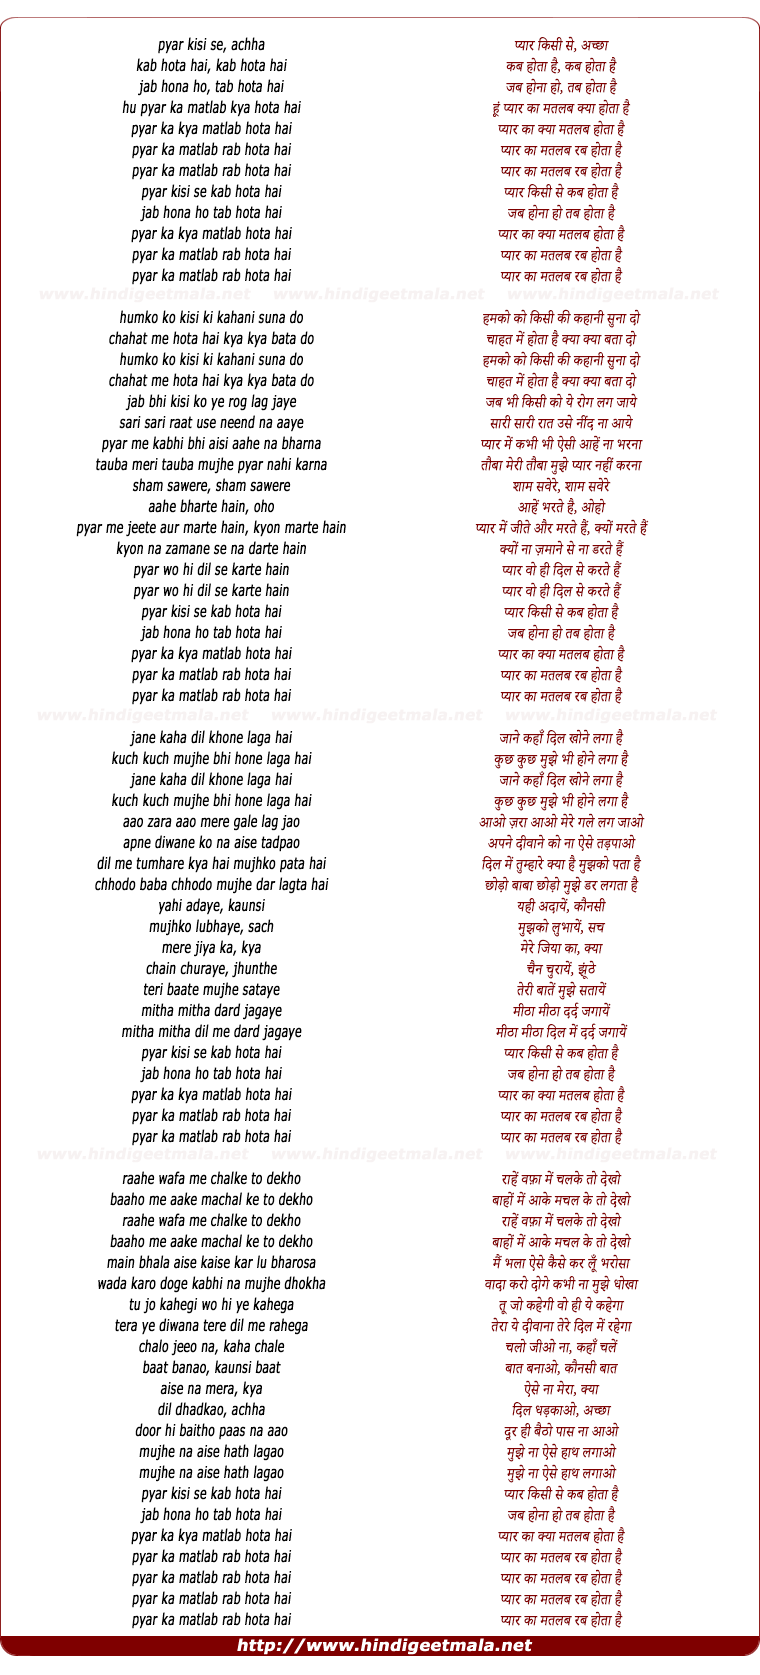 lyrics of song Pyar Kisi Se Kab Hota Hai